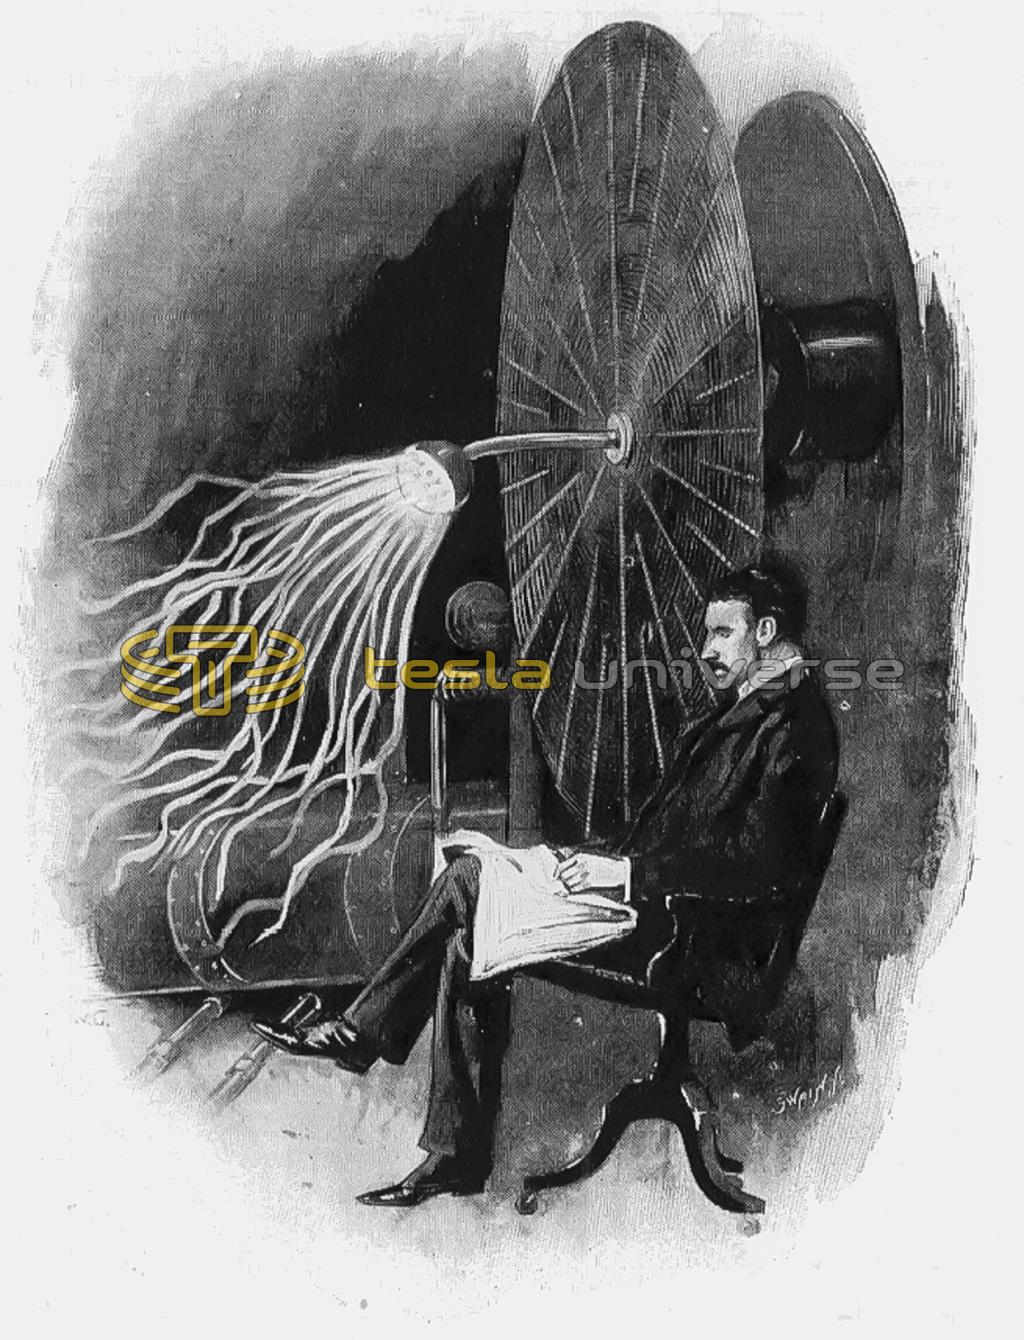 Nikola Tesla and his wireless telegraphy apparatus